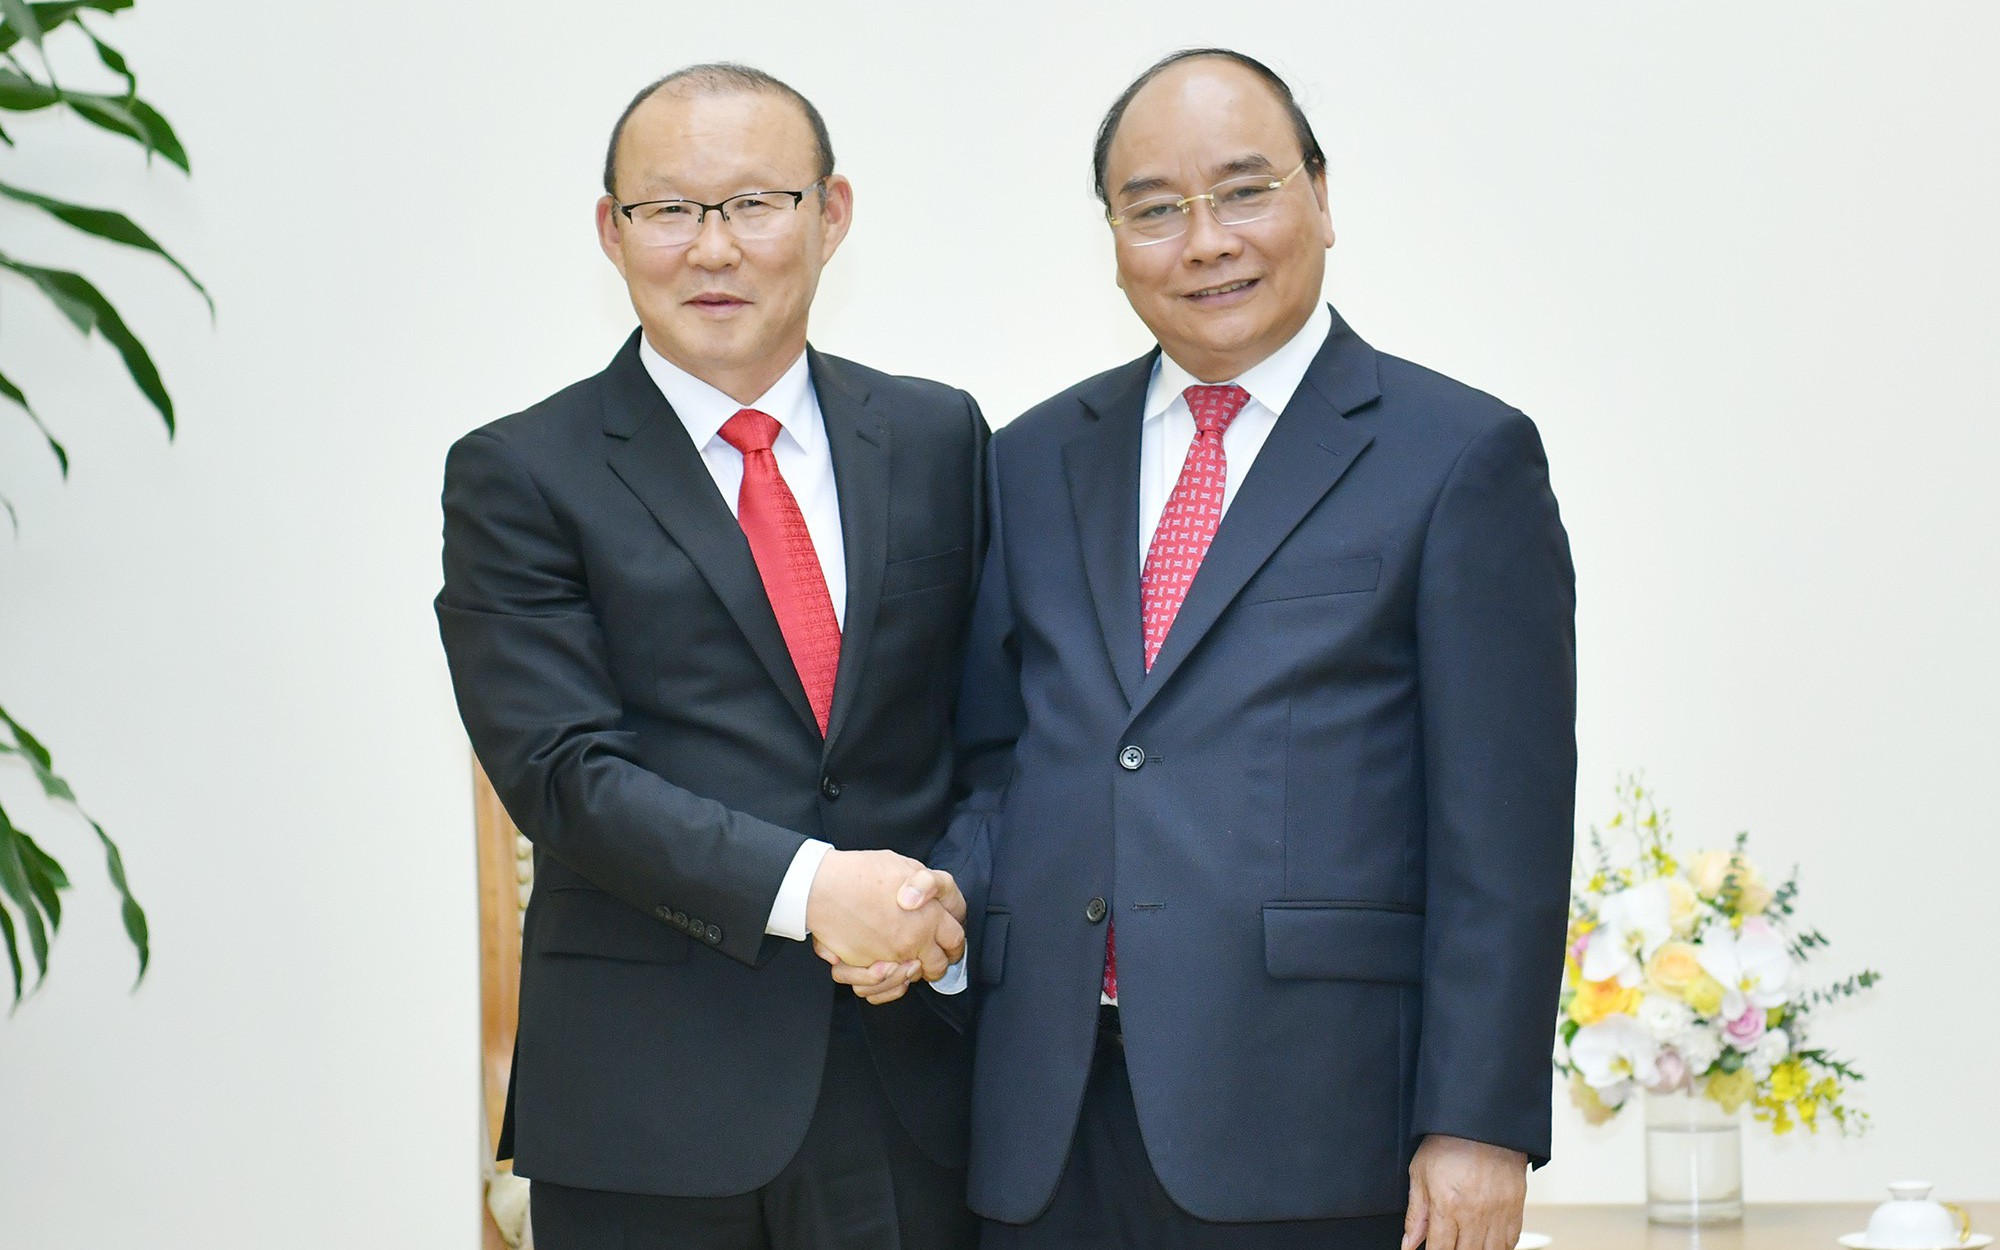 Thủ tướng Nguyễn Xuân Phúc gặp mặt HLV Park Hang-seo sau kỳ nghỉ Tết tại Hàn Quốc